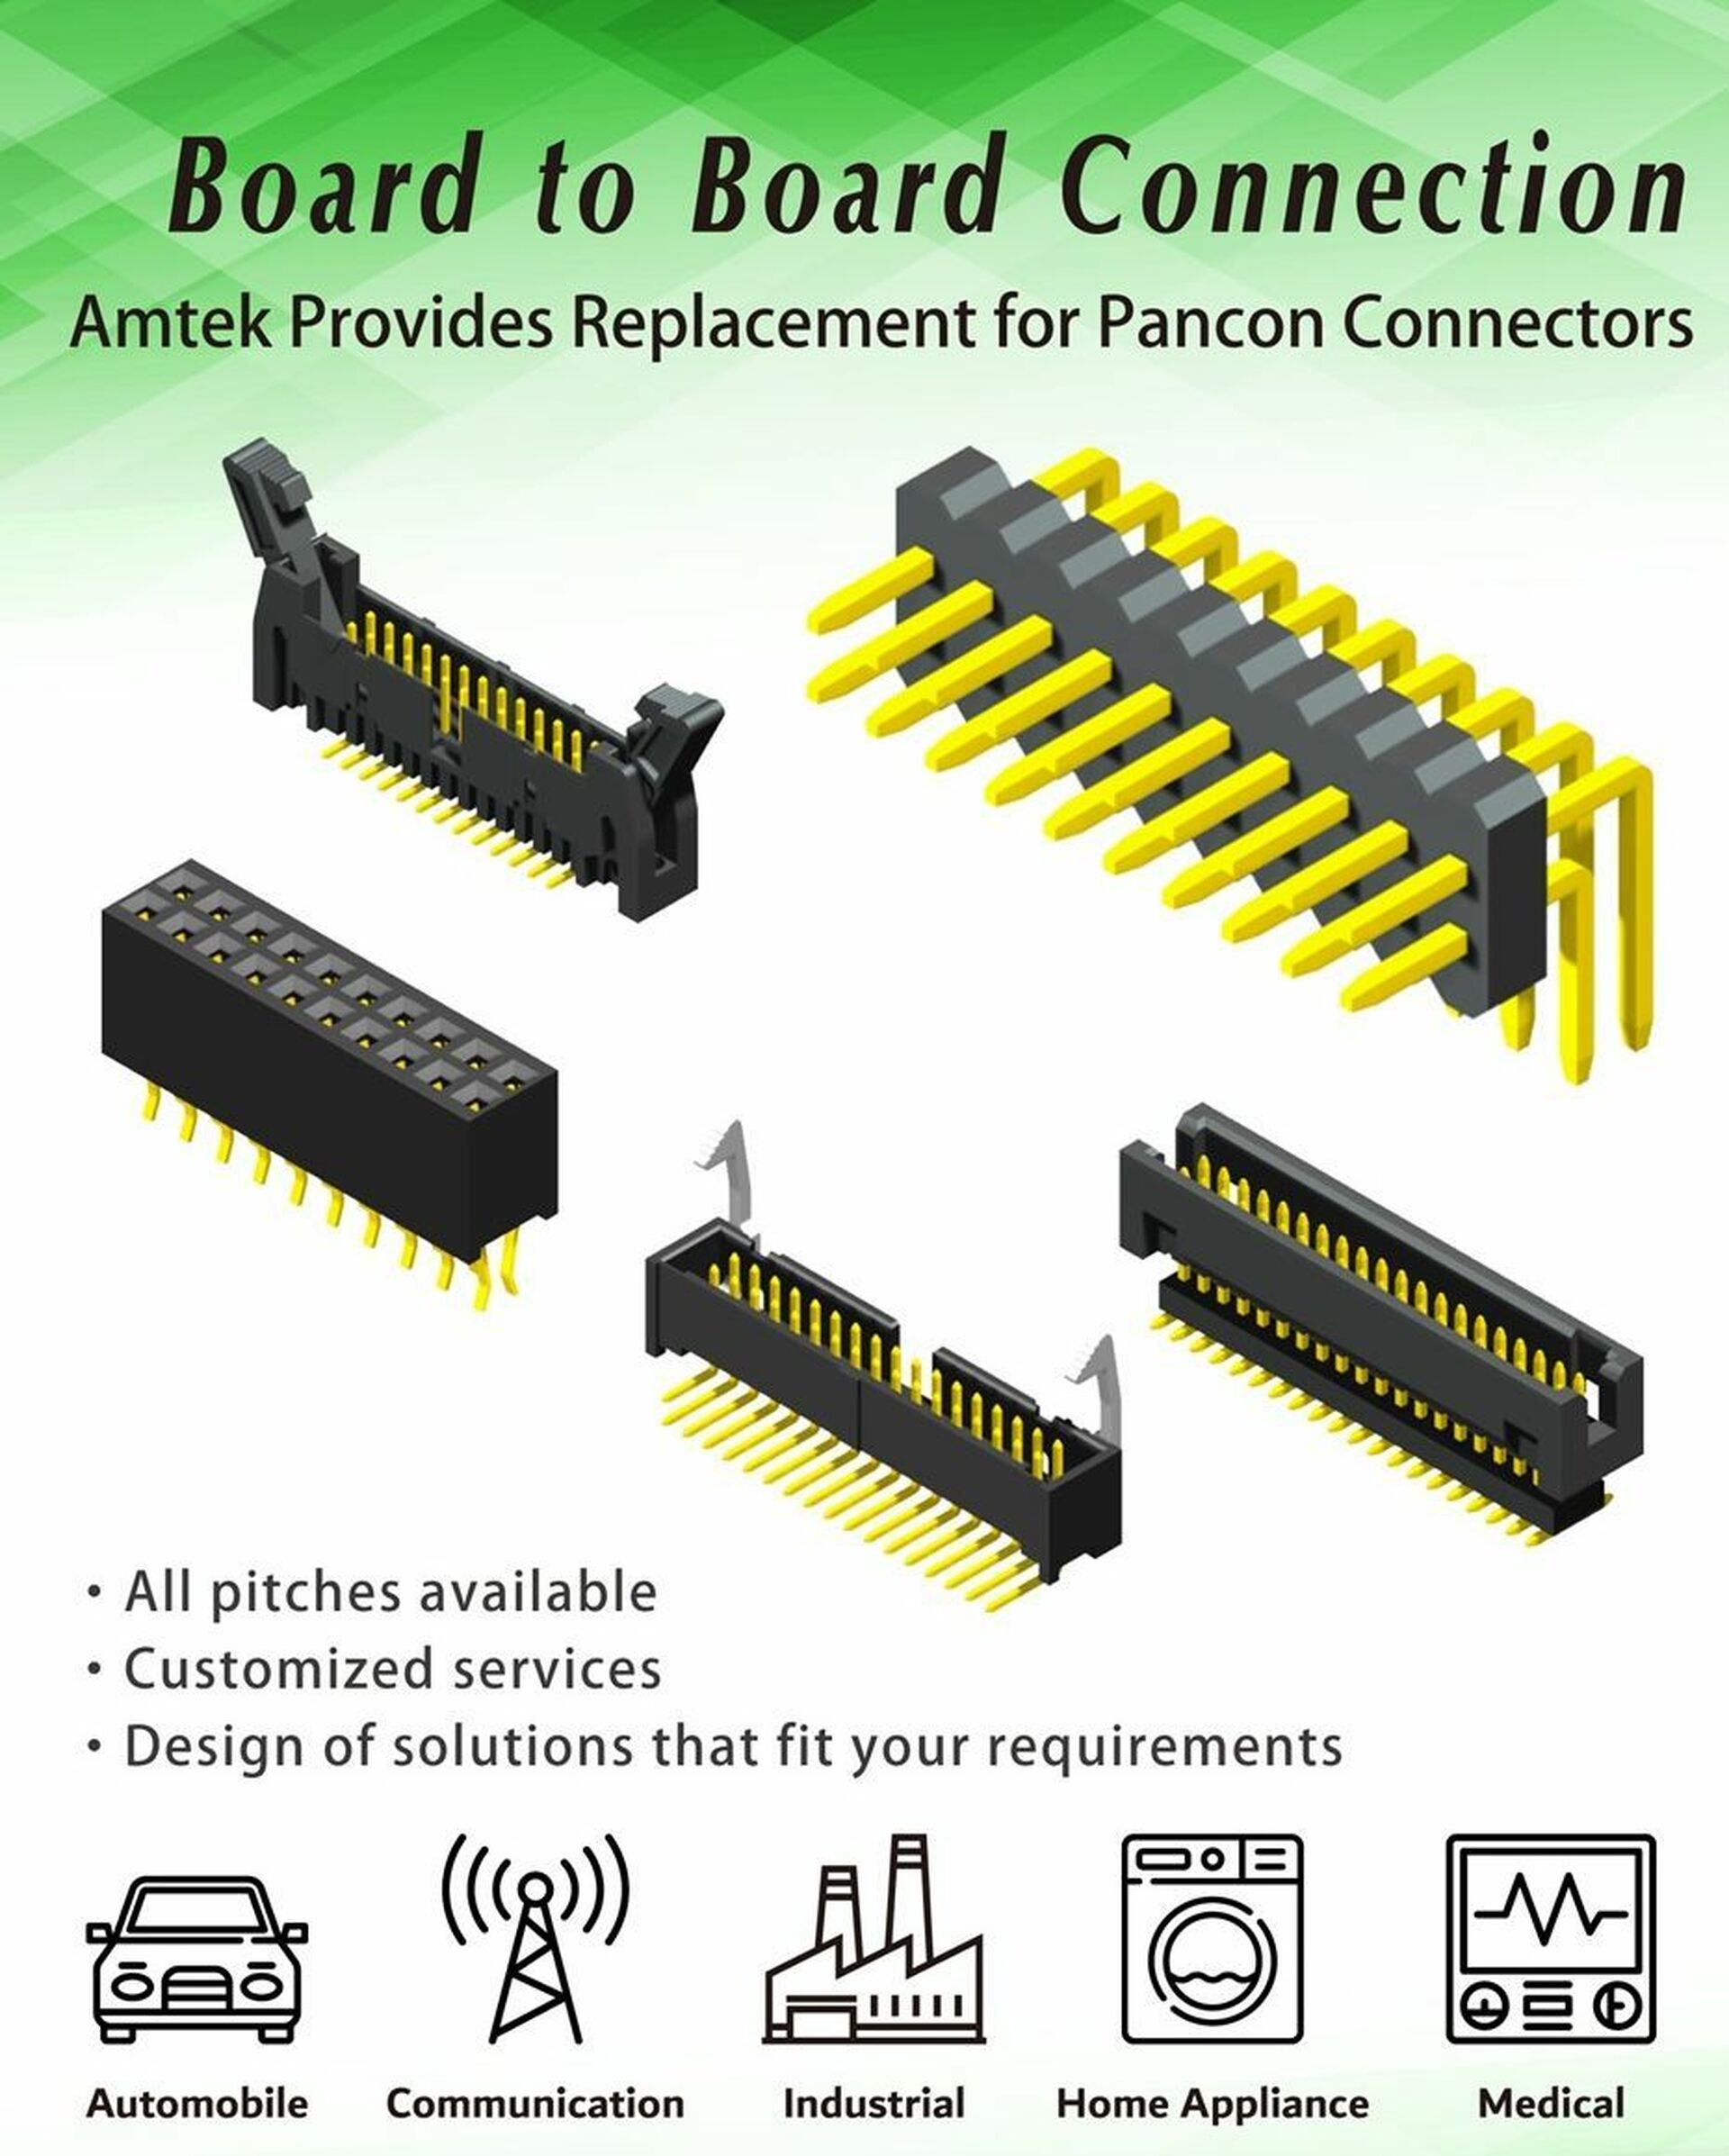 Amtek board to board connectors